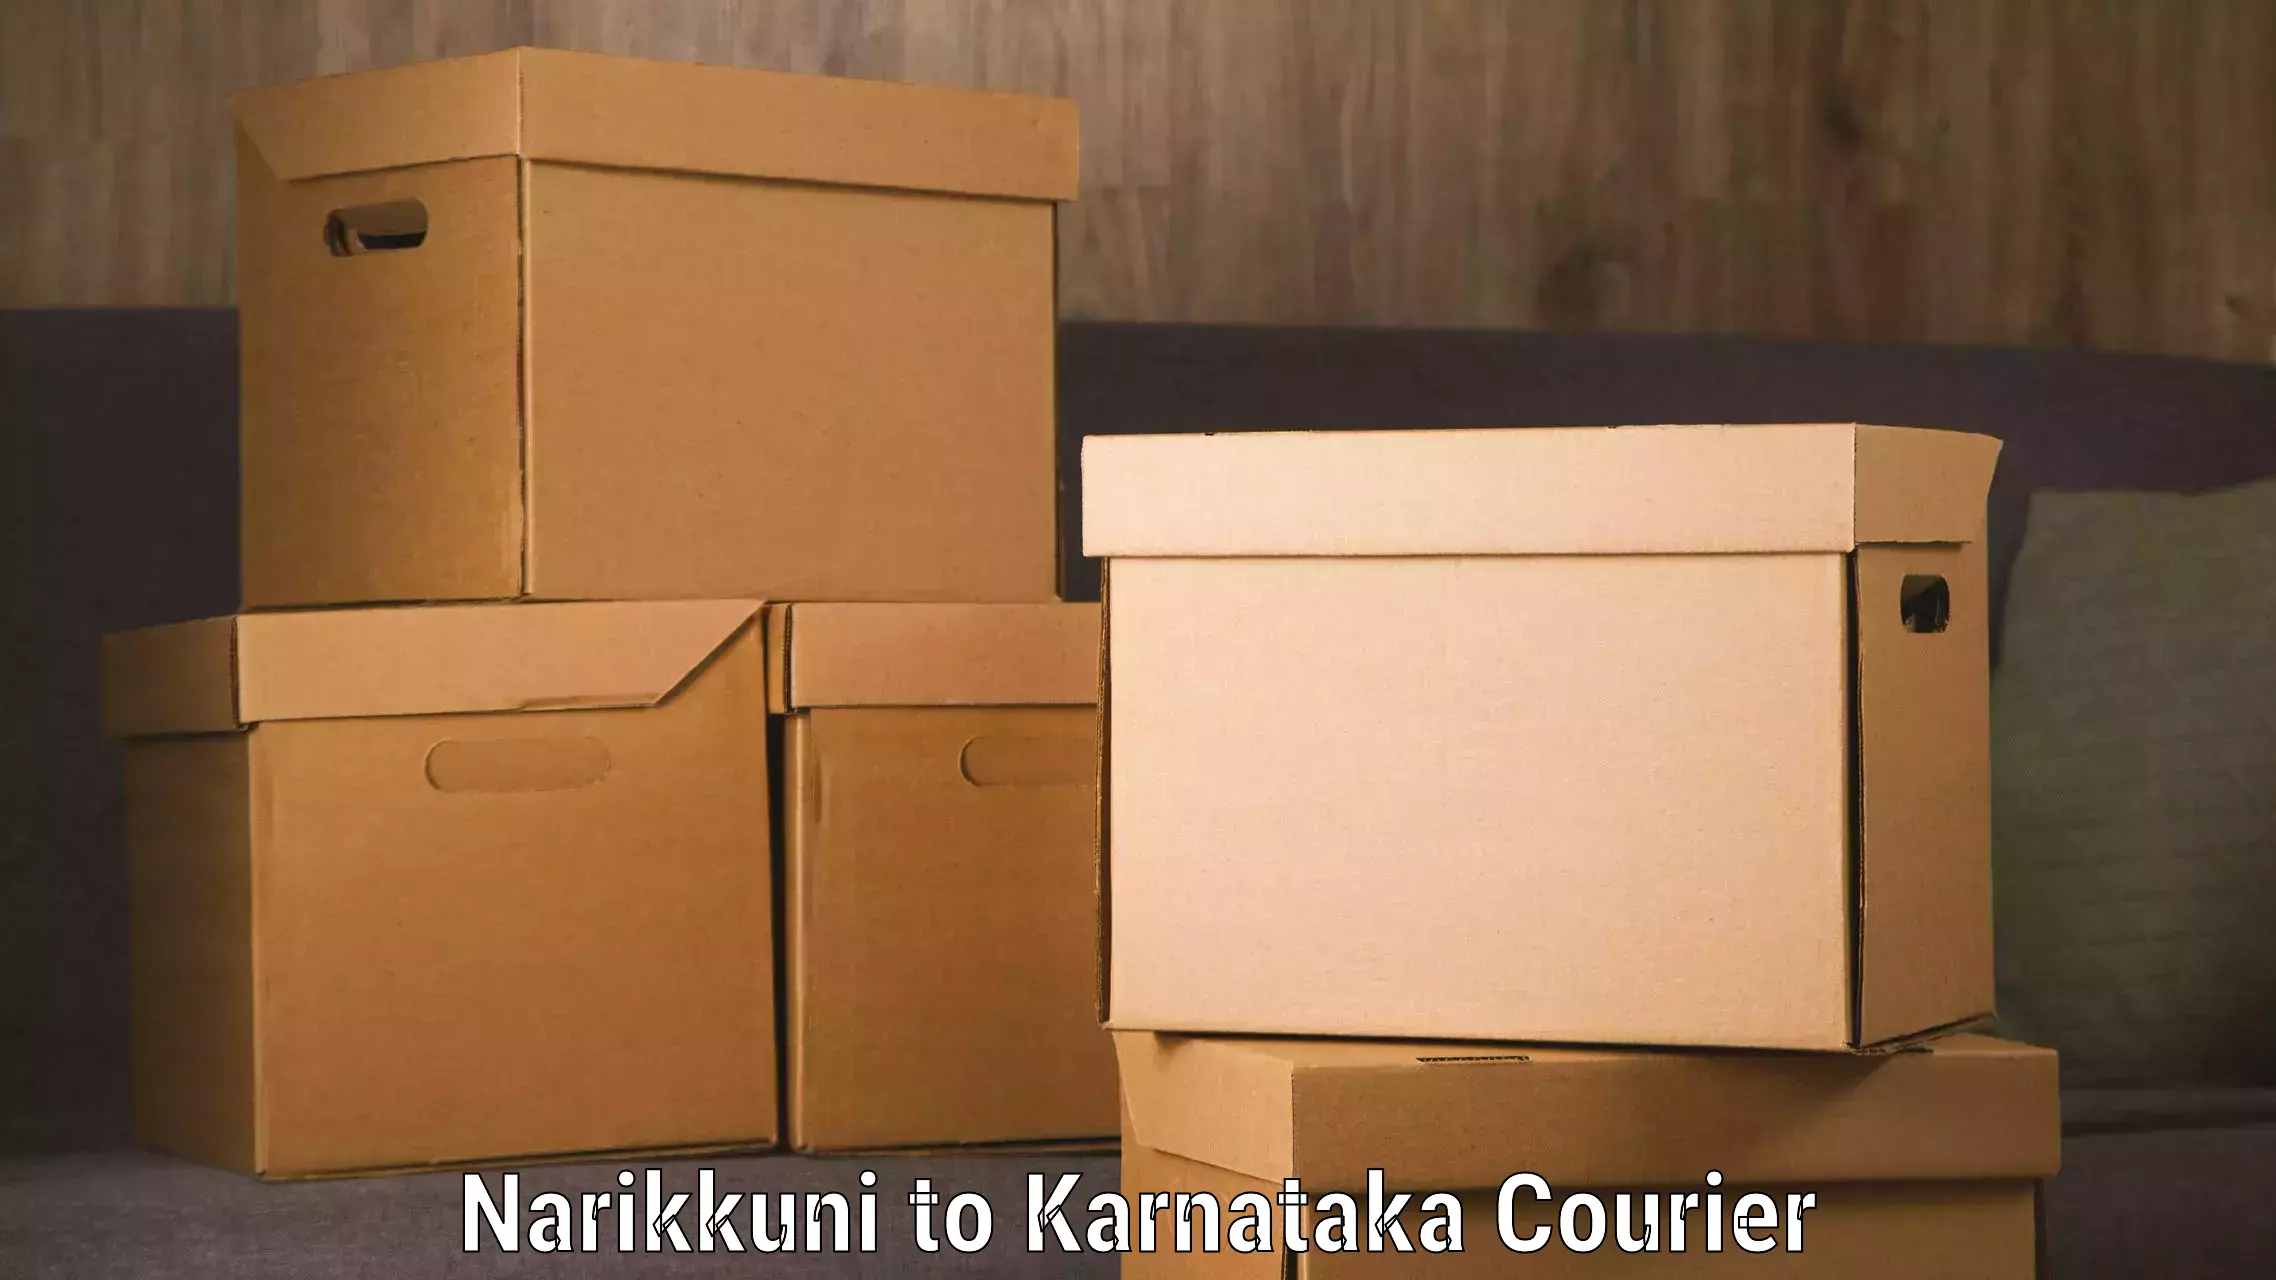 Tailored freight services Narikkuni to Karnataka